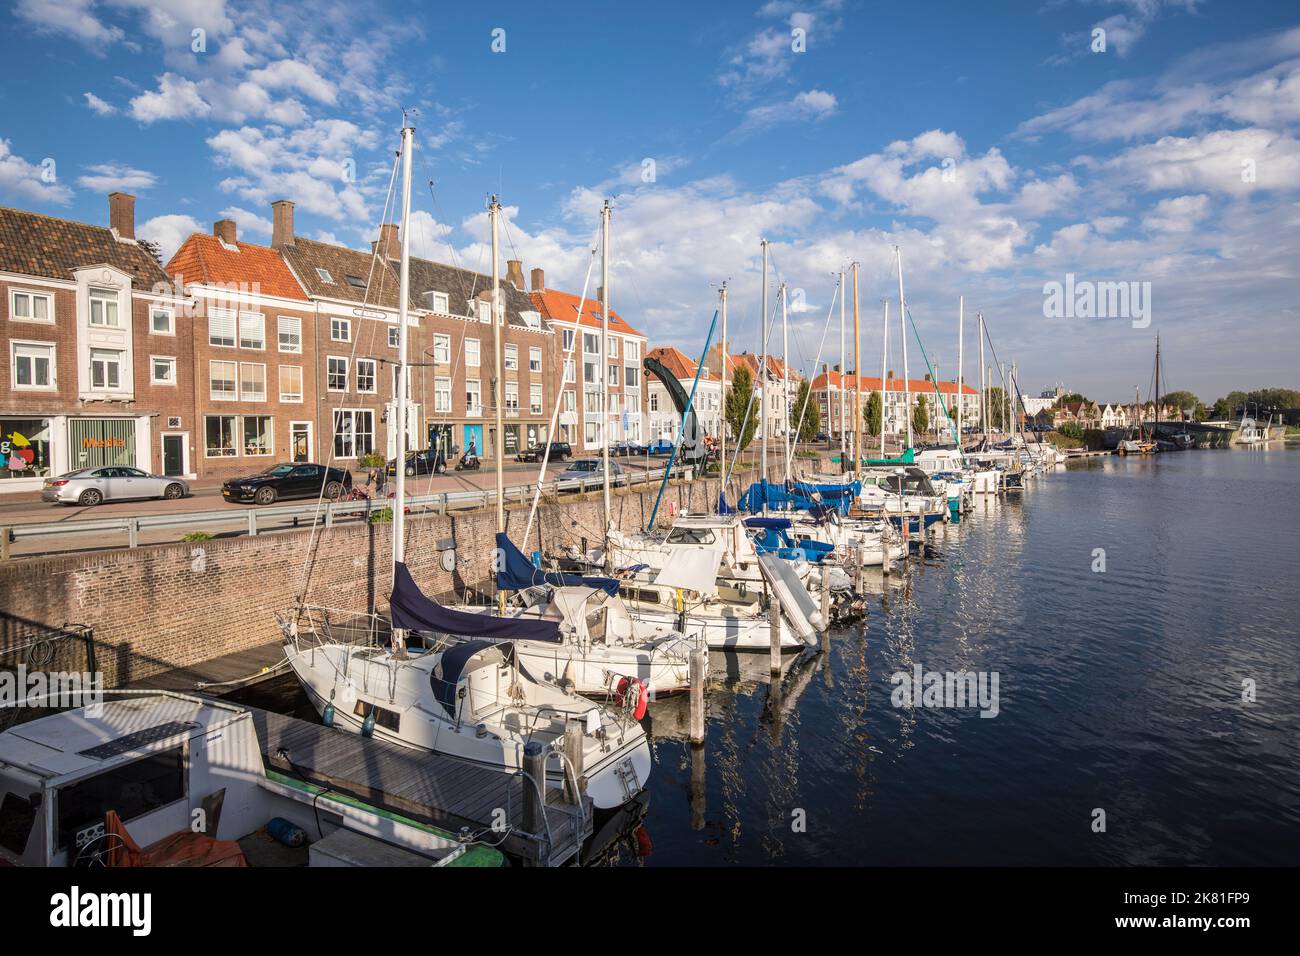 Middelburg auf der Halbinsel Walcheren, Häuser an der Straße Rotterdamsekaai, Boote, Yachthafen, Zeeland, Niederlande. Middelburg auf Walcheren, Haeuser Stockfoto